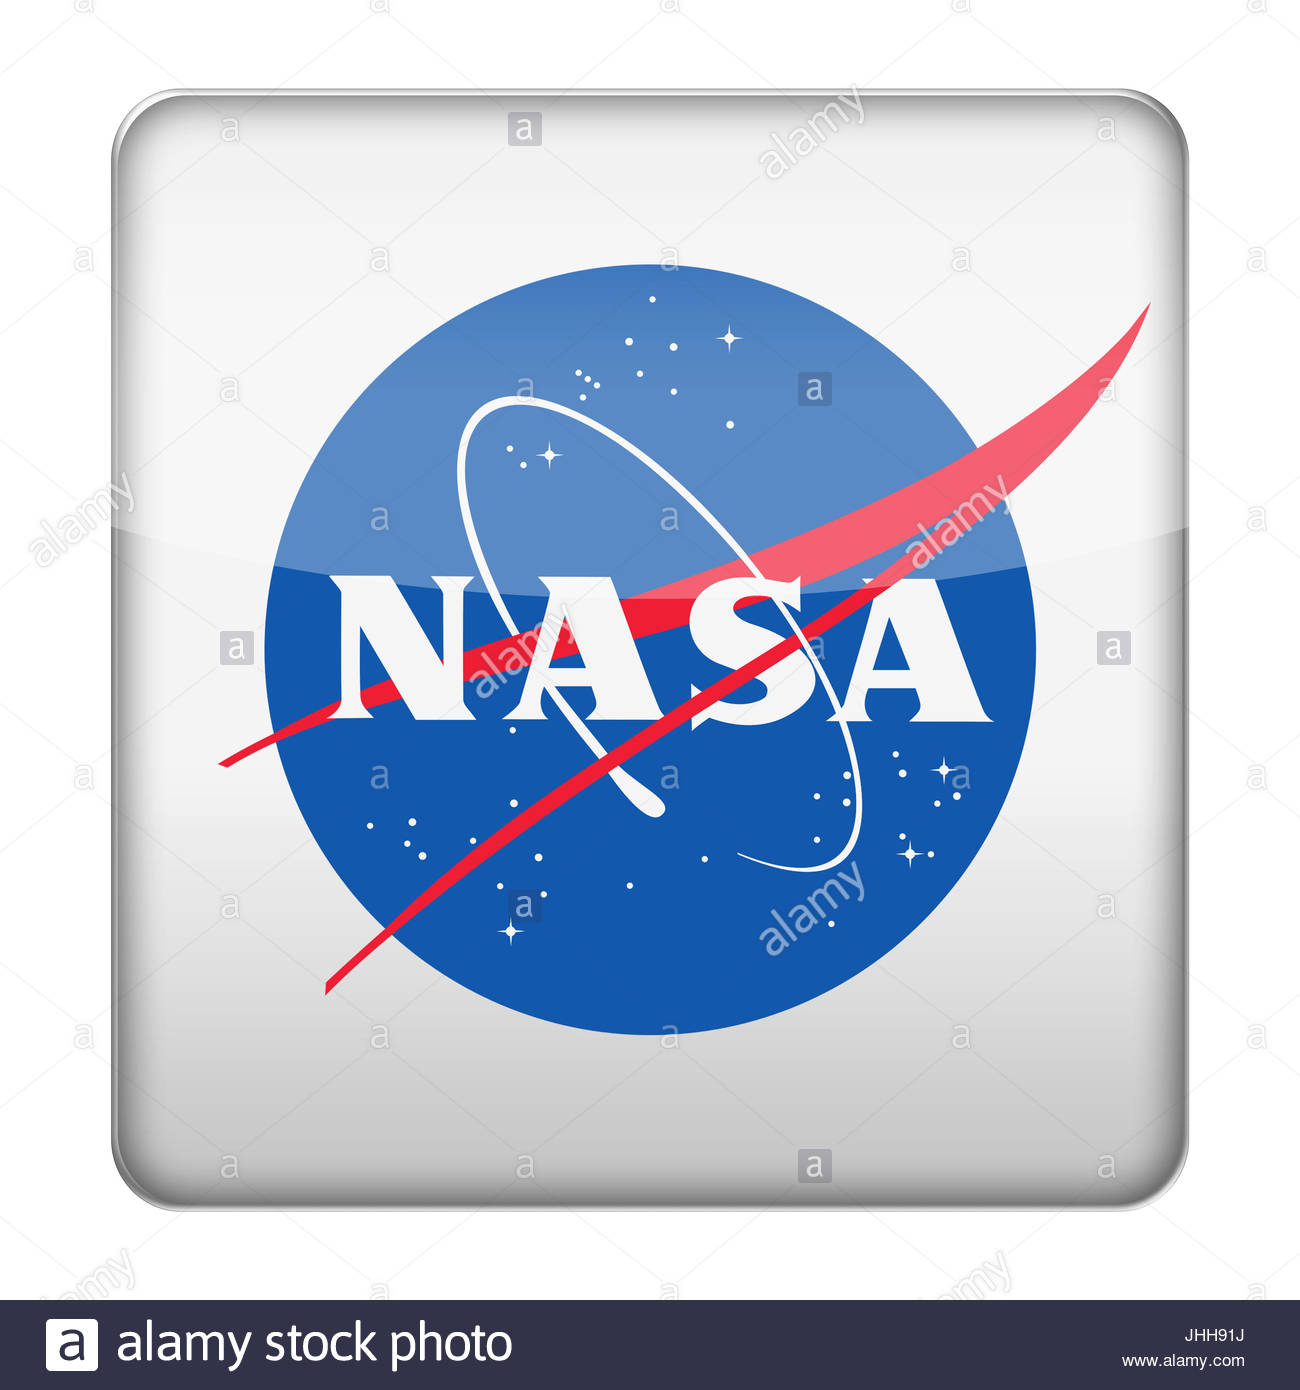 NASA iOS Icon - Uplabs